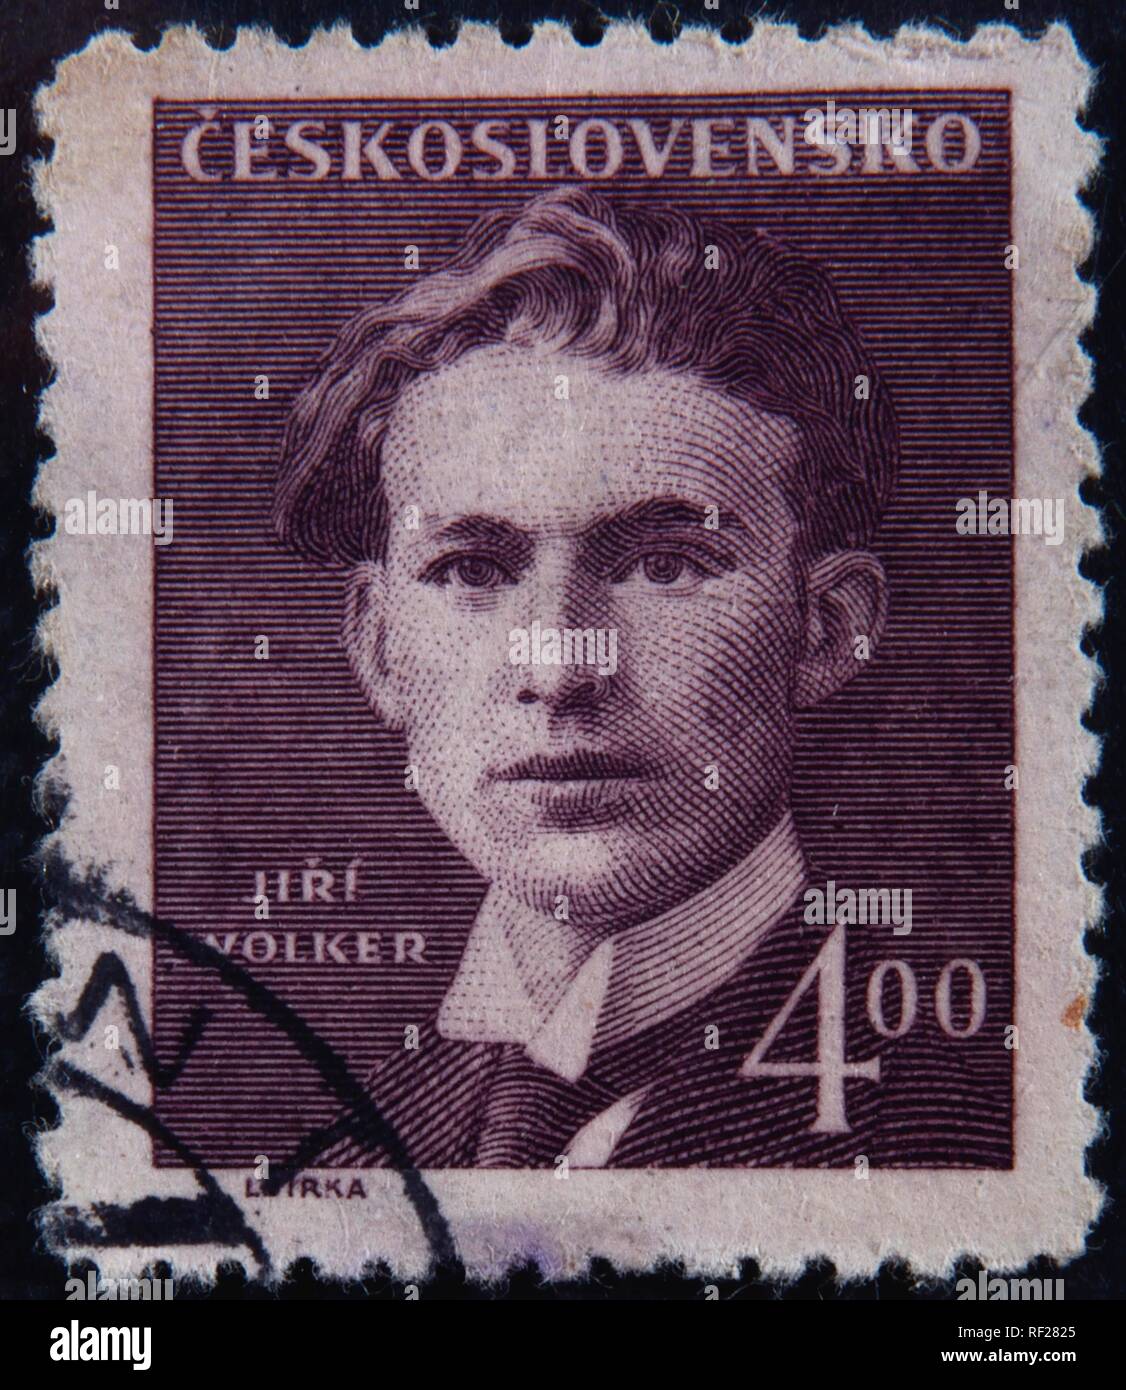 Jiri Volker, a Croatian poet, portrait on a Czechoslovakian stamp, Sweden Stock Photo